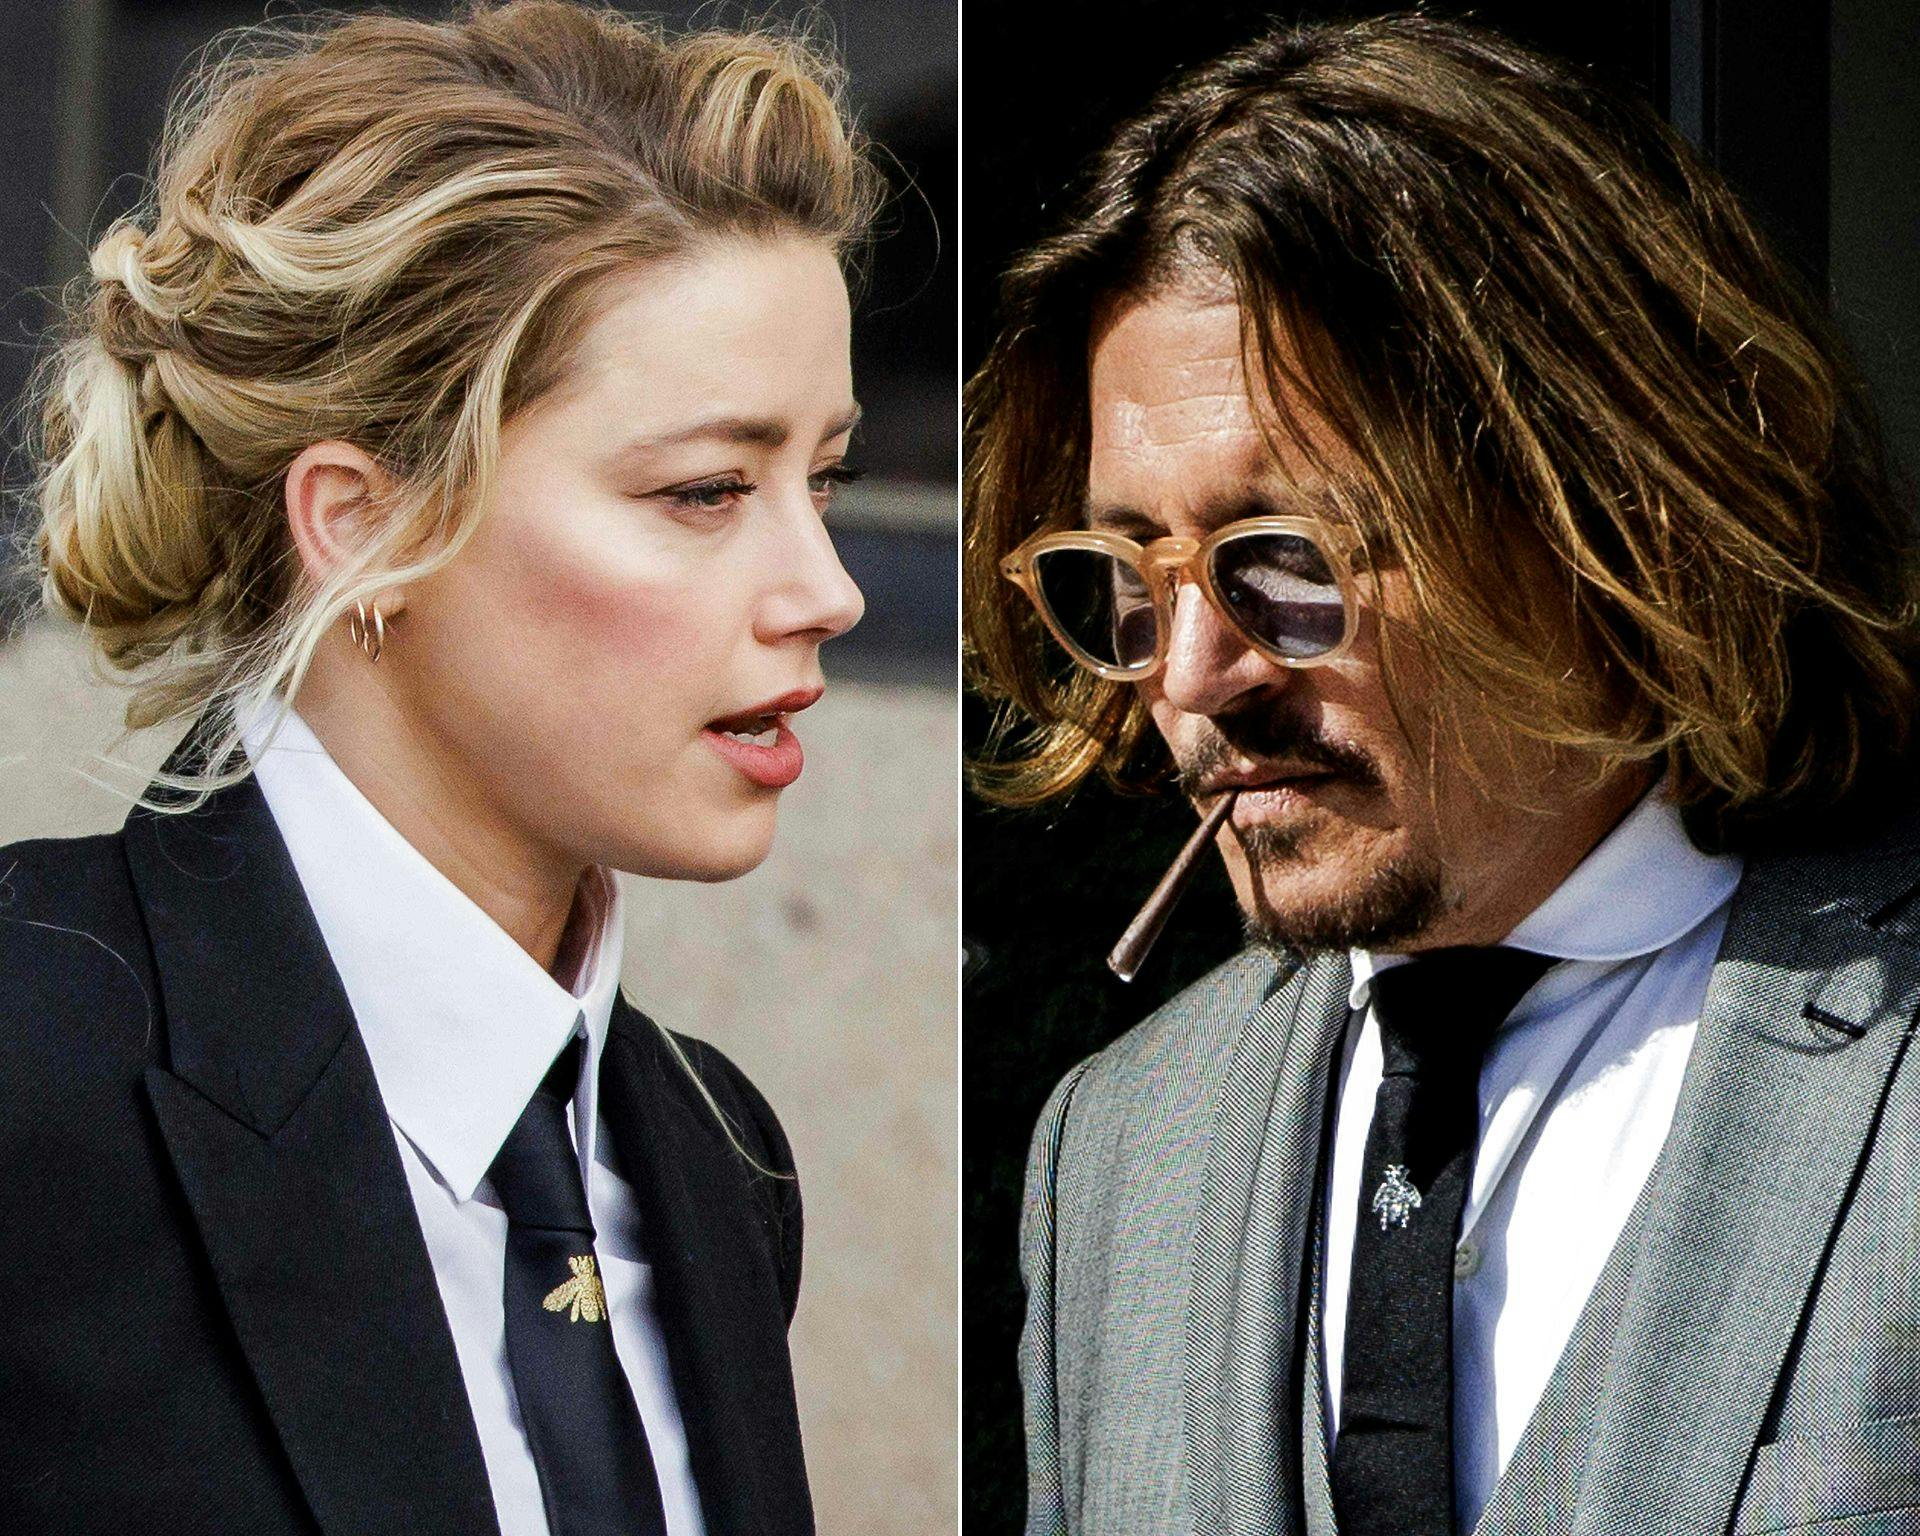 Dramaet mellem Amber Heard og Johnny Depp fortsætter.